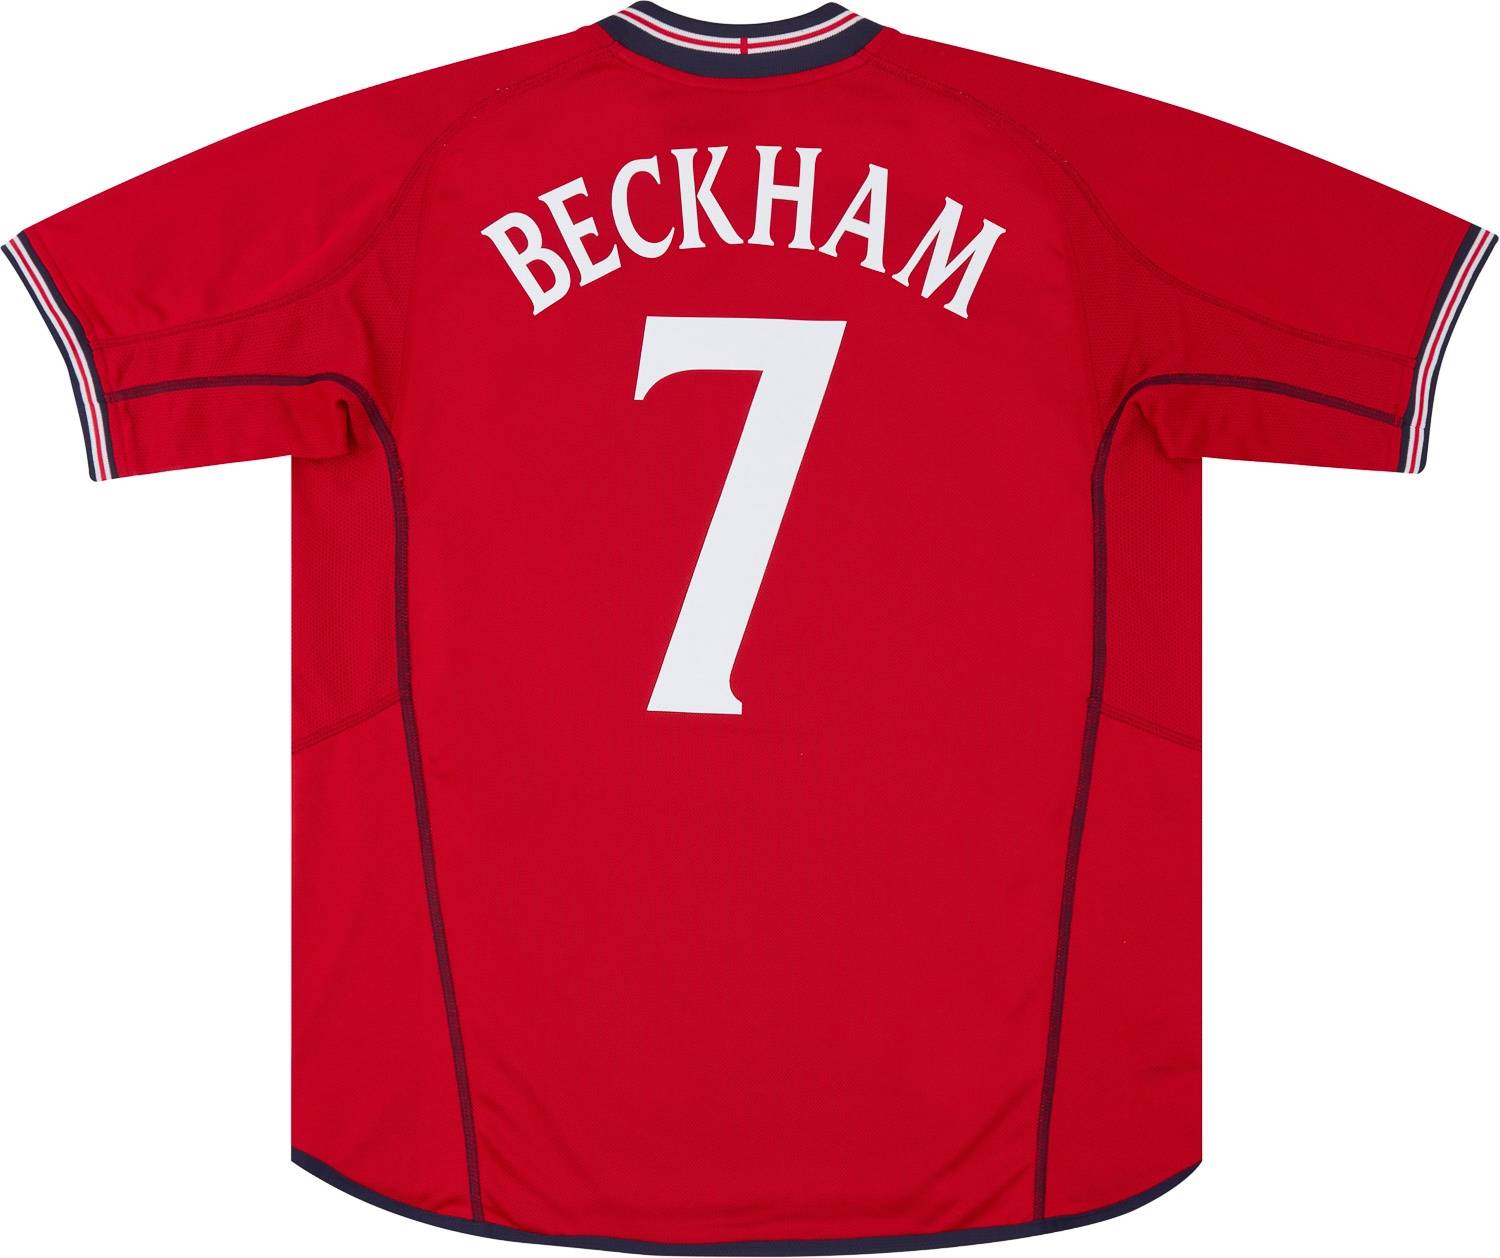 2002-04 England Away Shirt Beckham #7